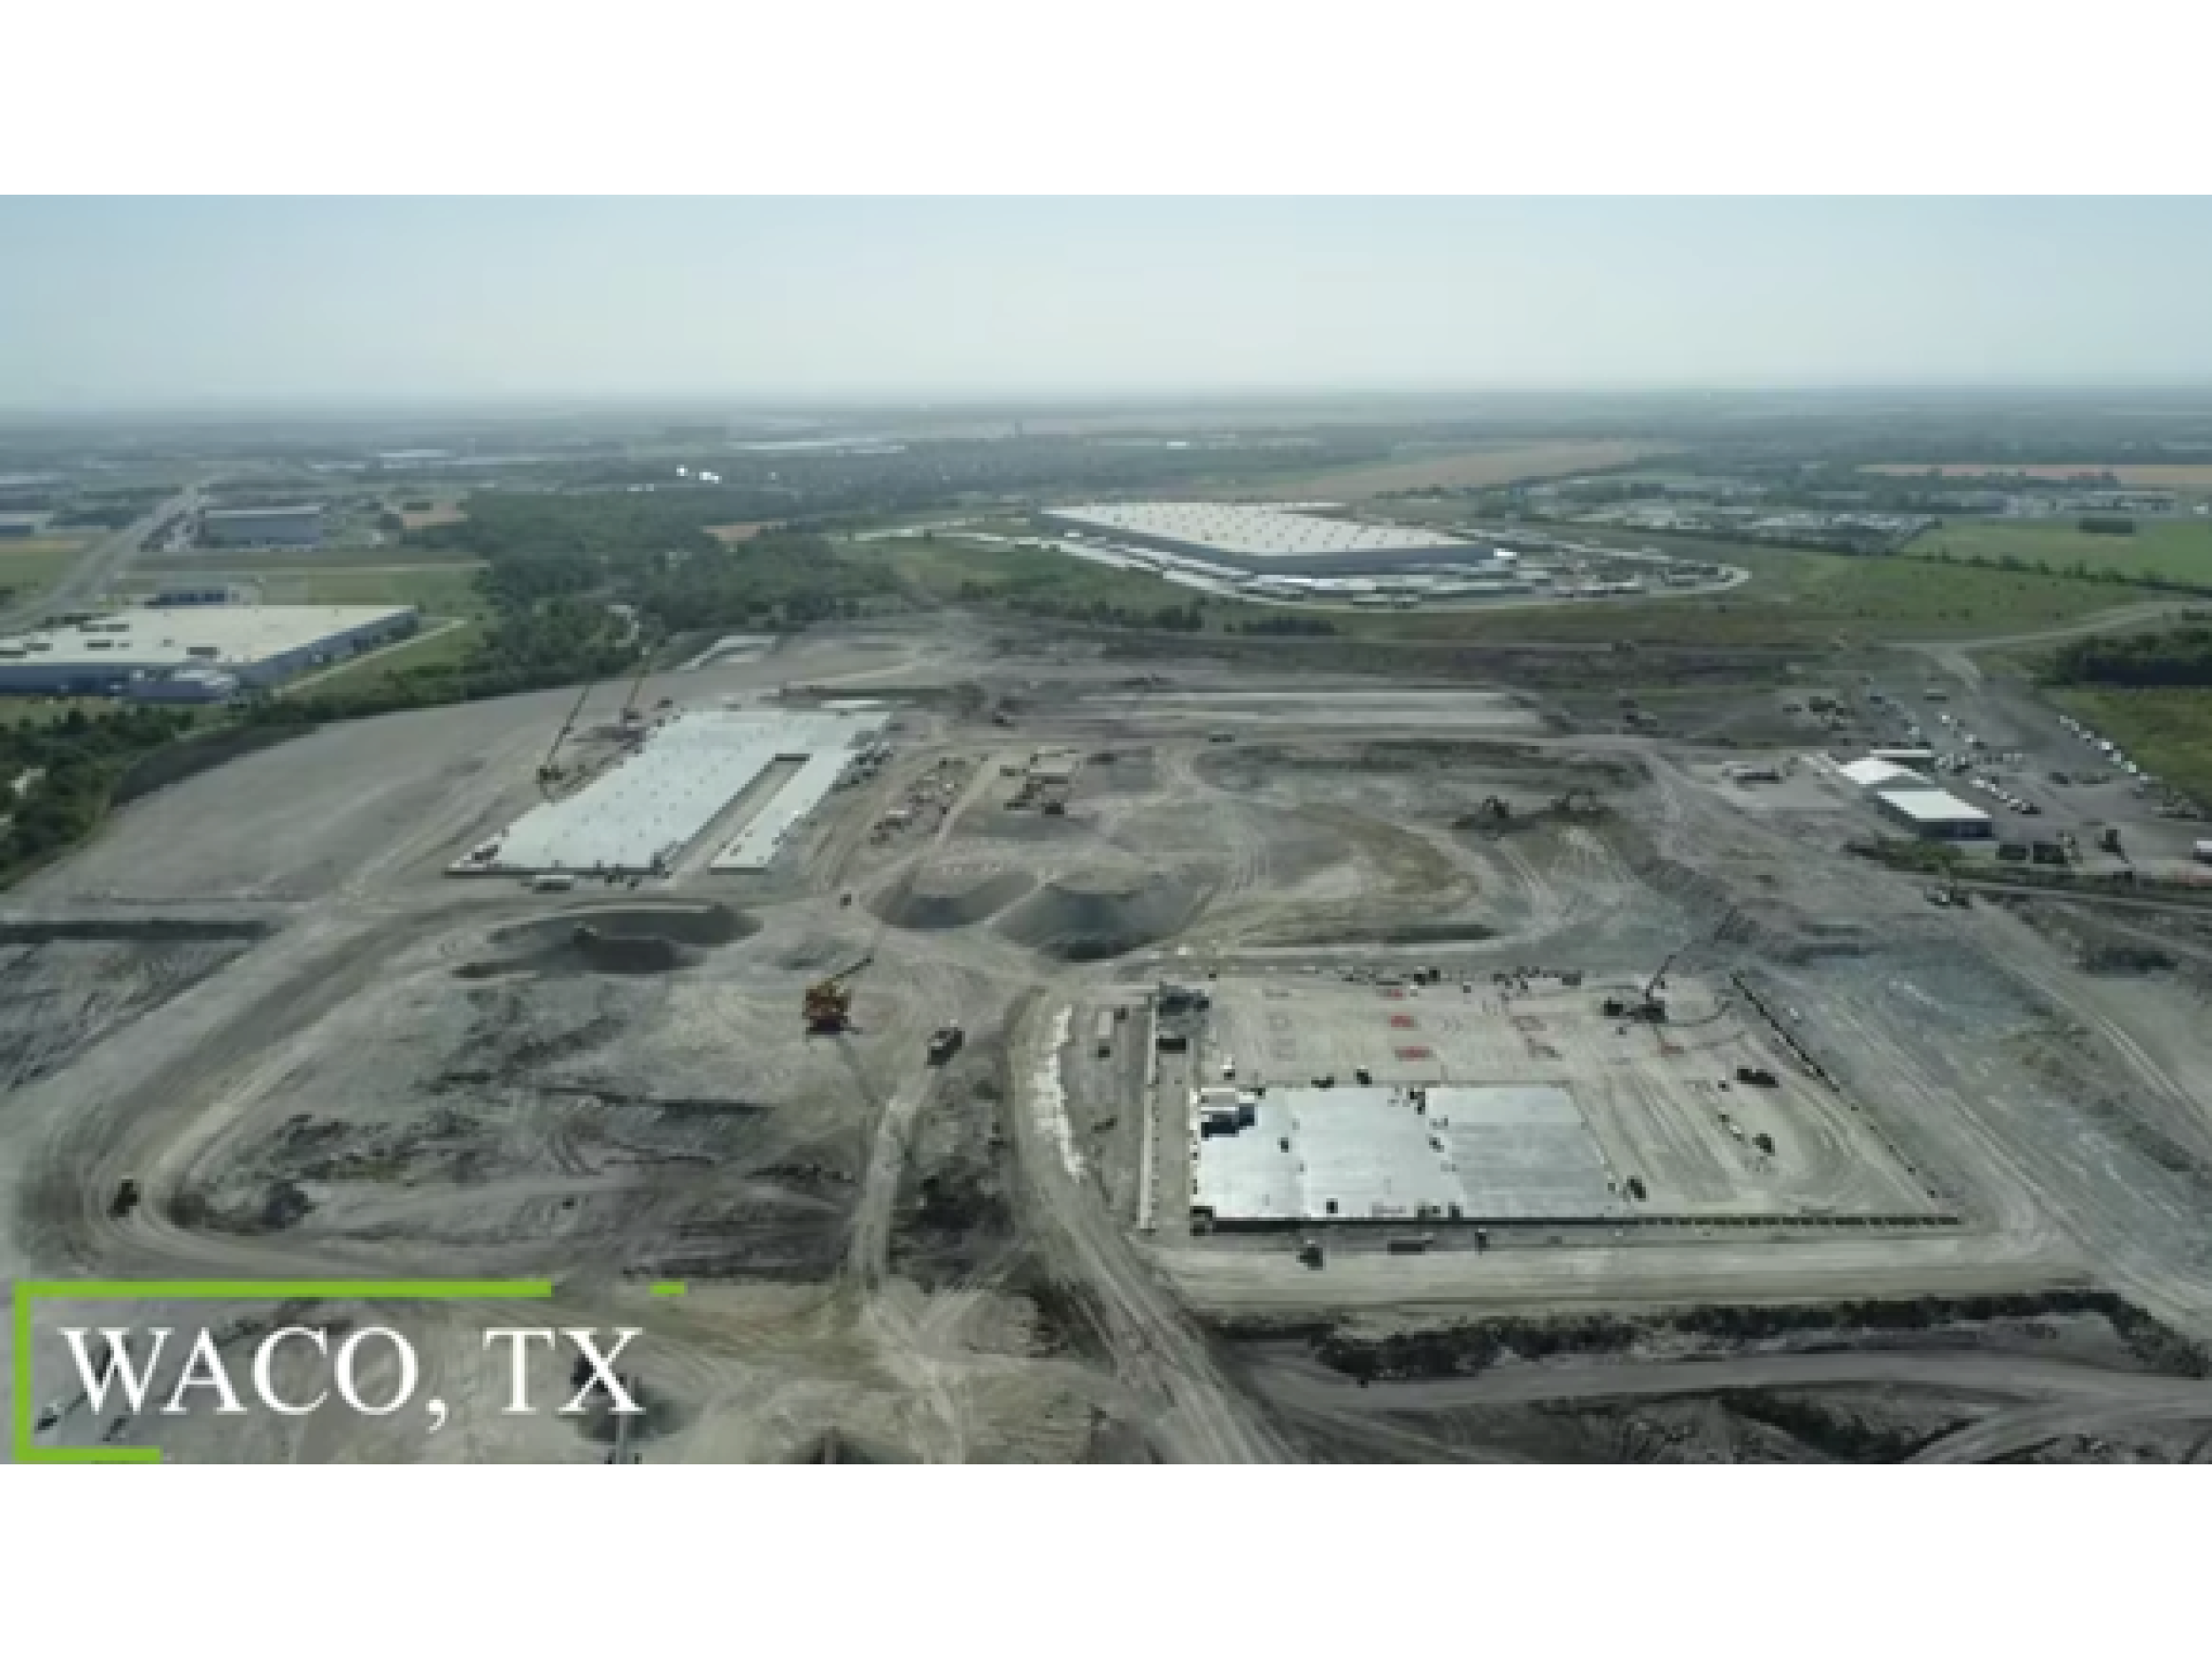 Graphic Packaging International anunció a principios de 2023 sus planes de construir una planta en Waco, Texas, dedicada a la producción de cartón reciclado, cuya apertura está prevista para 2026.